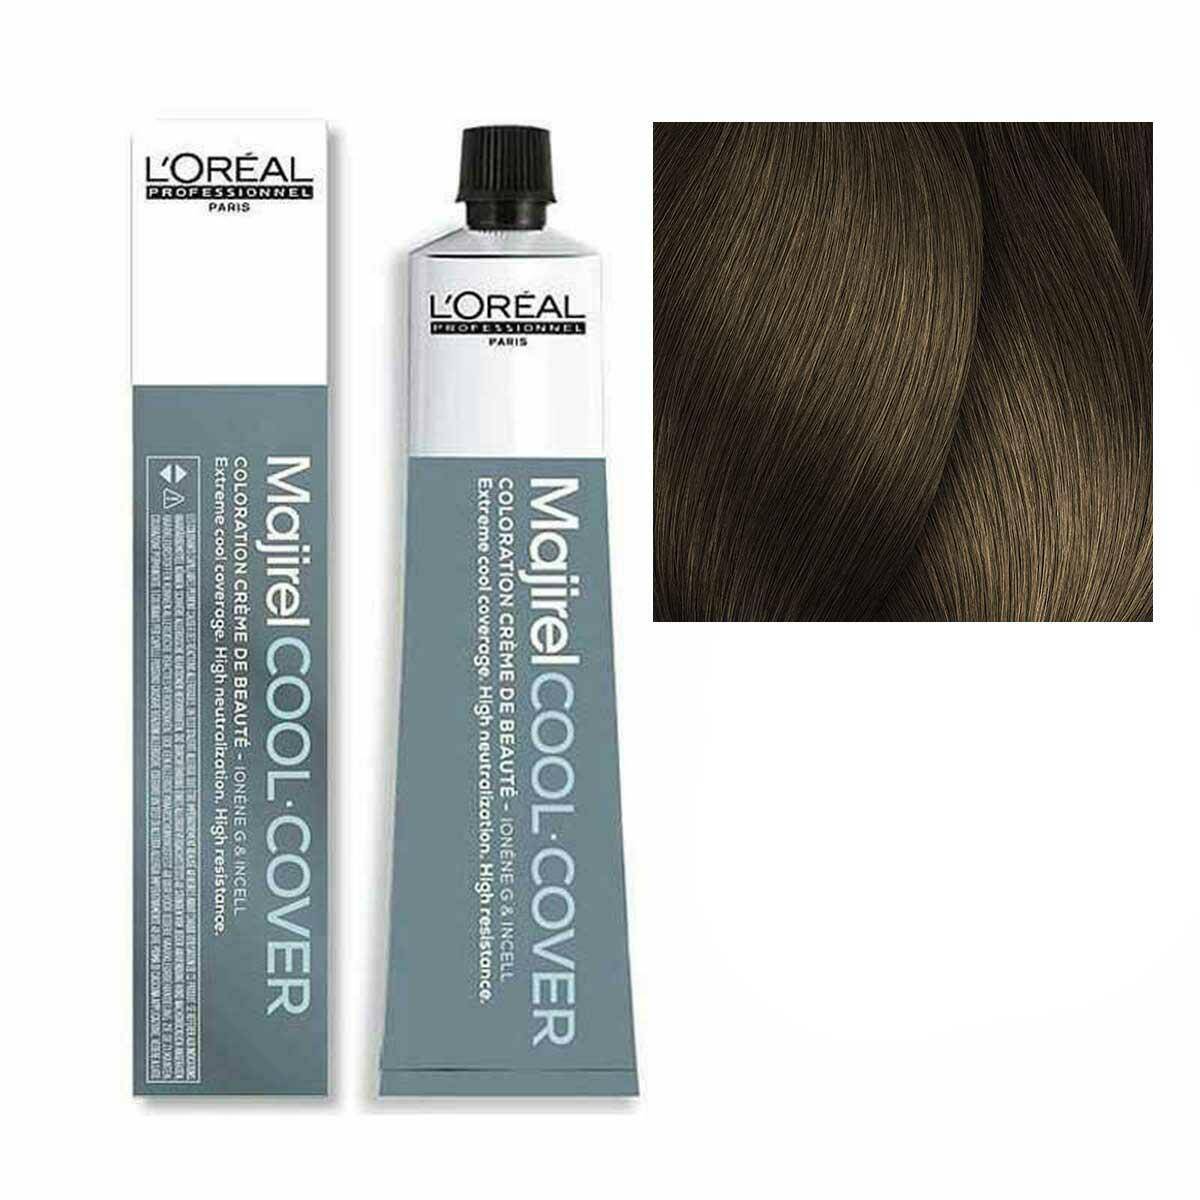 Loreal Majirel Cool Cover Farba do włosów - 7.18 Blond popielaty mokka, chłodne odcienie 50ml